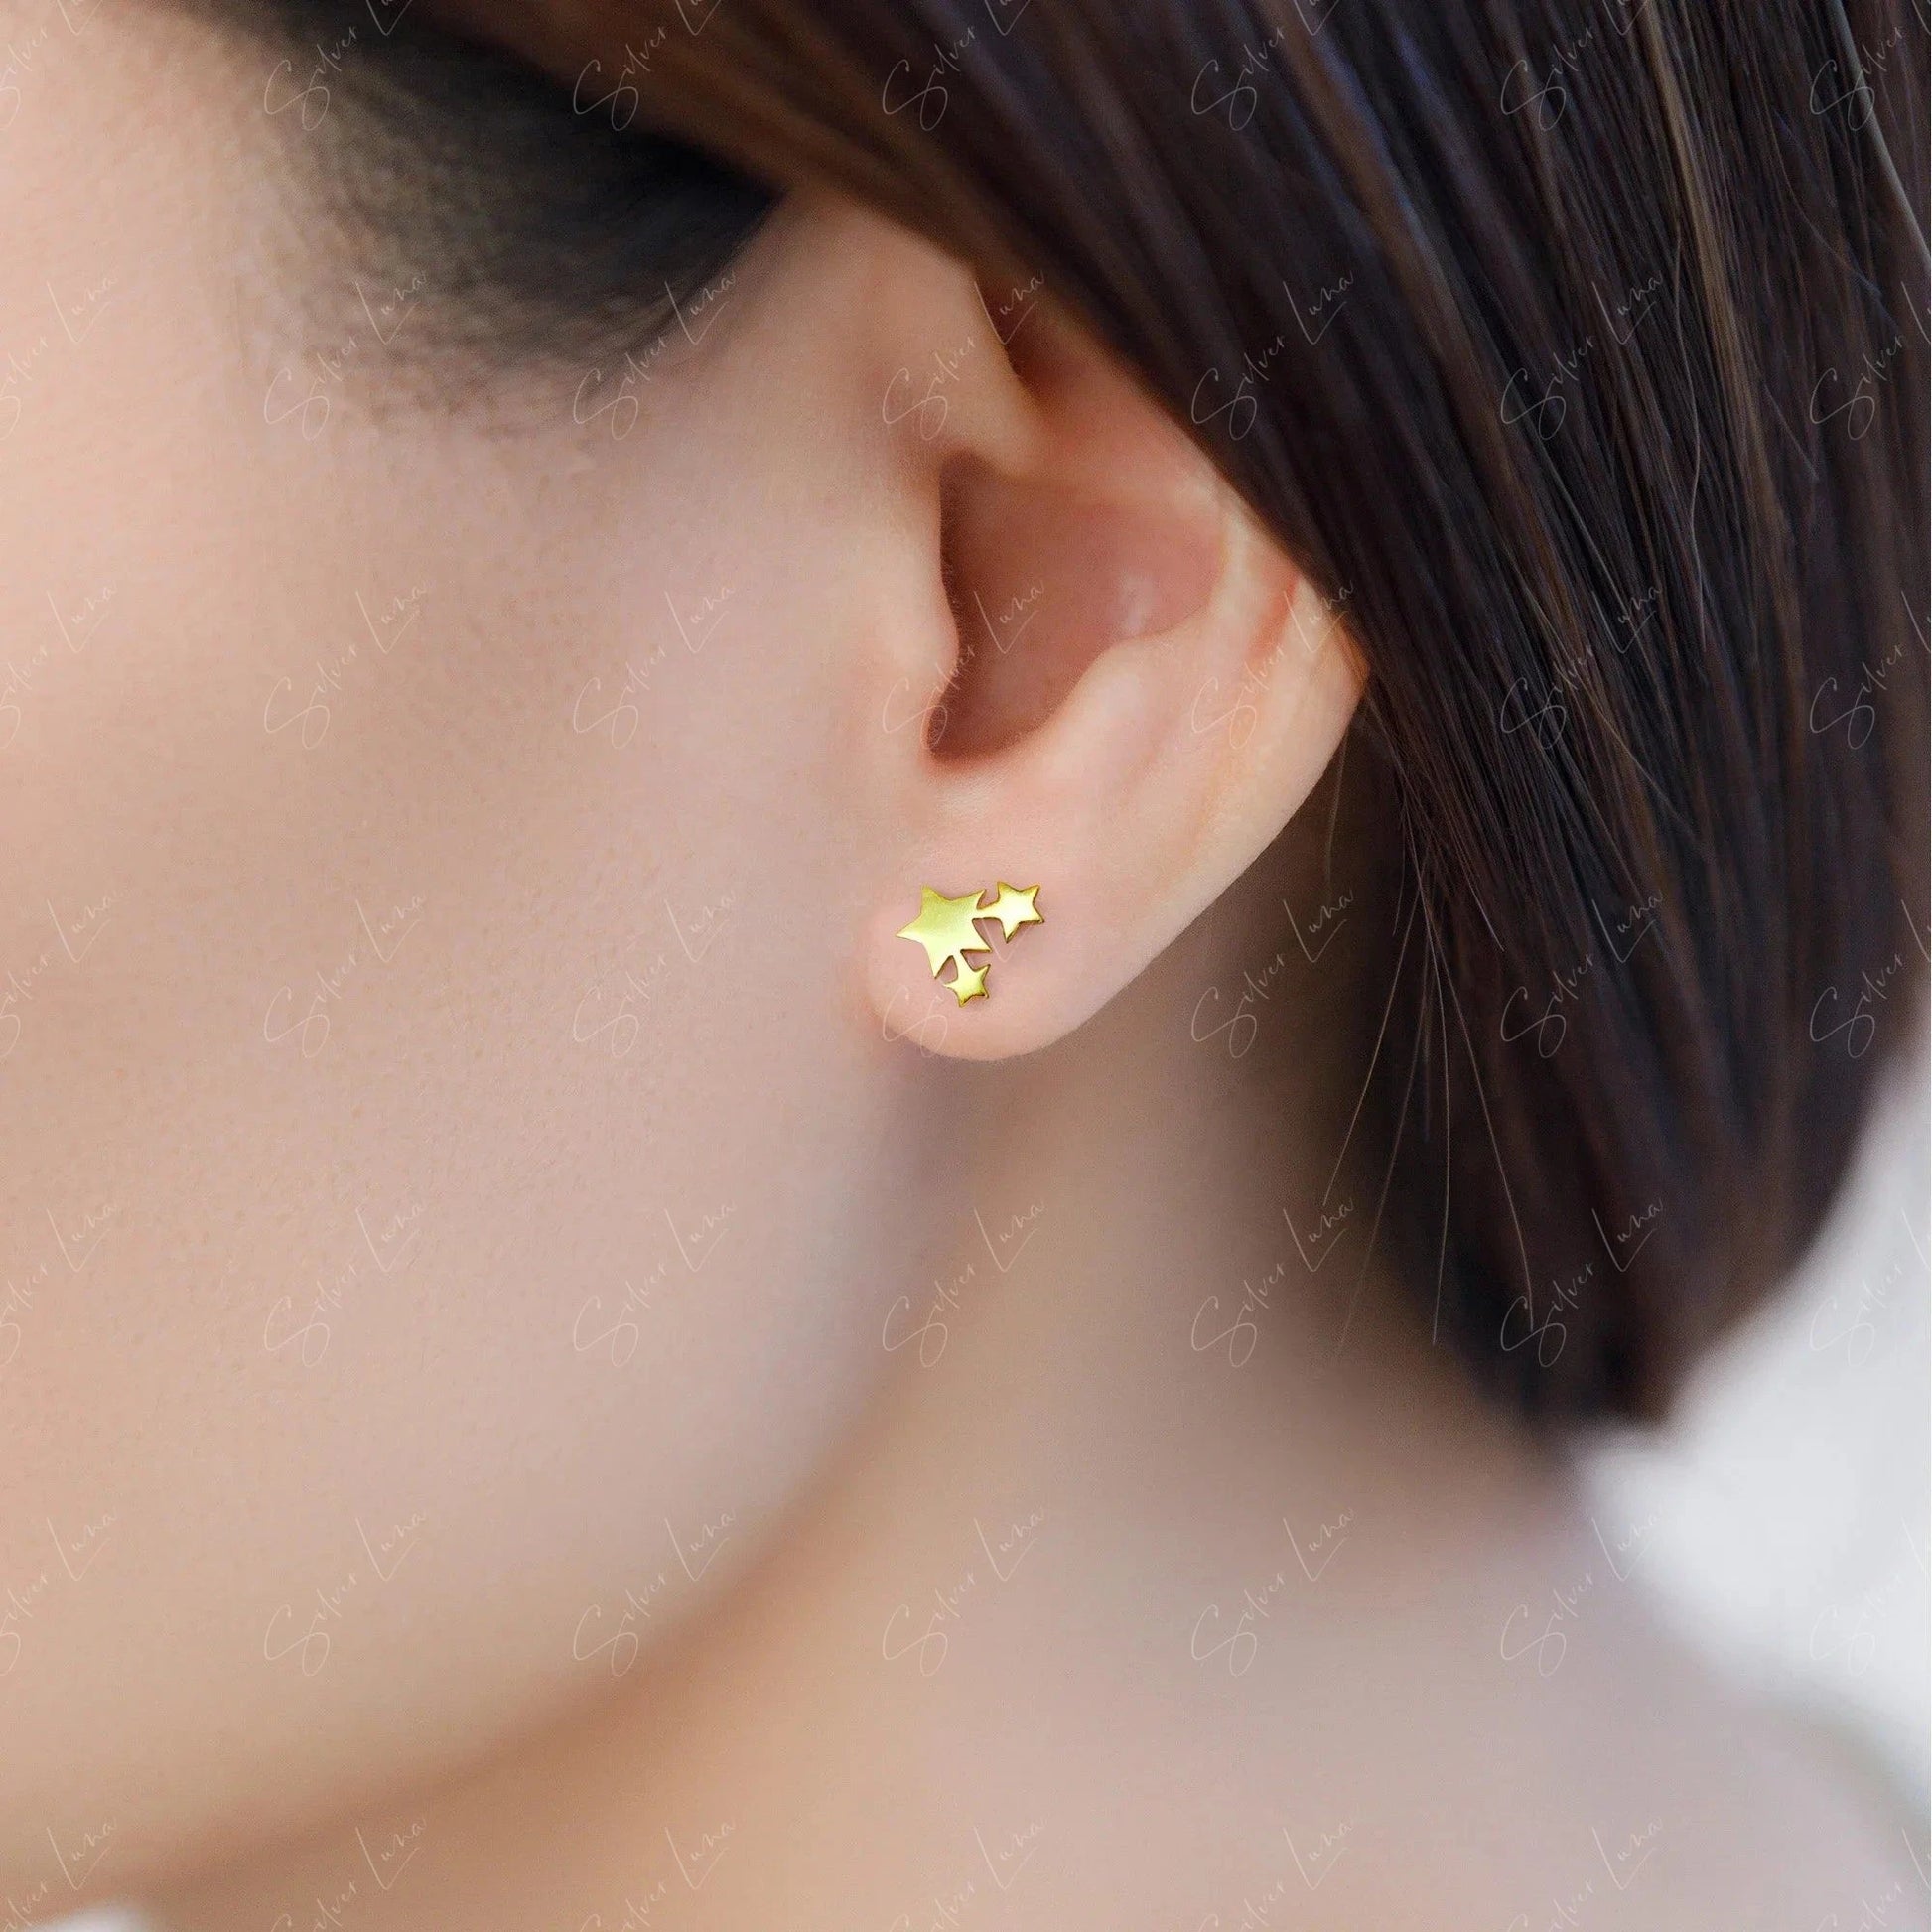 silver star stud earrings